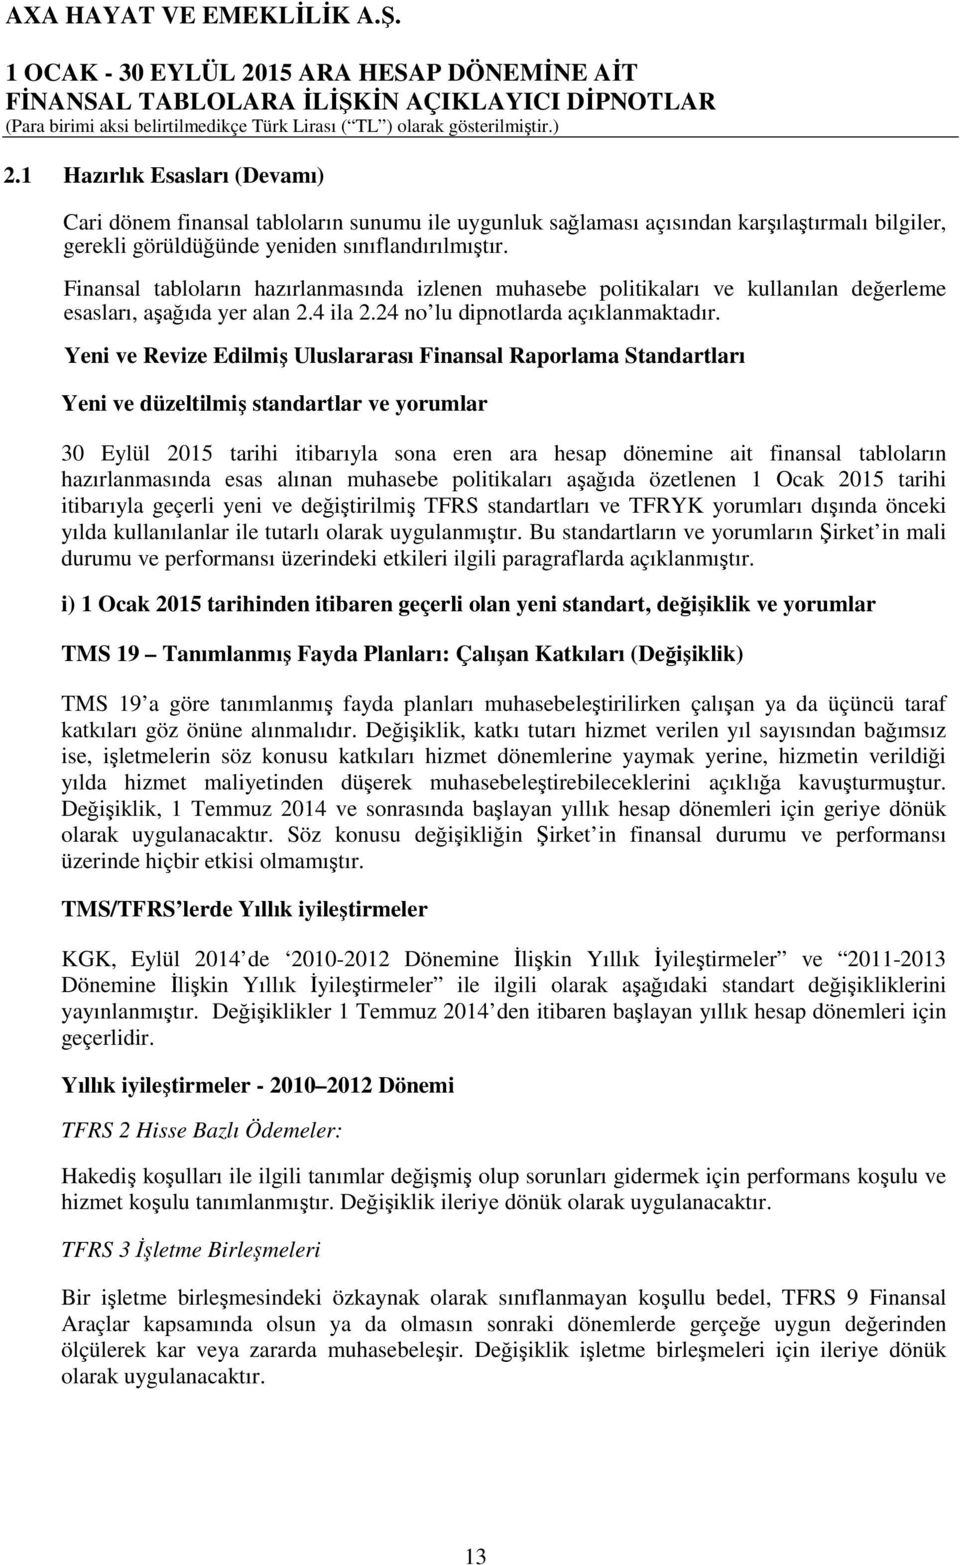 Yeni ve Revize Edilmiş Uluslararası Finansal Raporlama Standartları Yeni ve düzeltilmiş standartlar ve yorumlar 30 Eylül 2015 tarihi itibarıyla sona eren ara hesap dönemine ait finansal tabloların